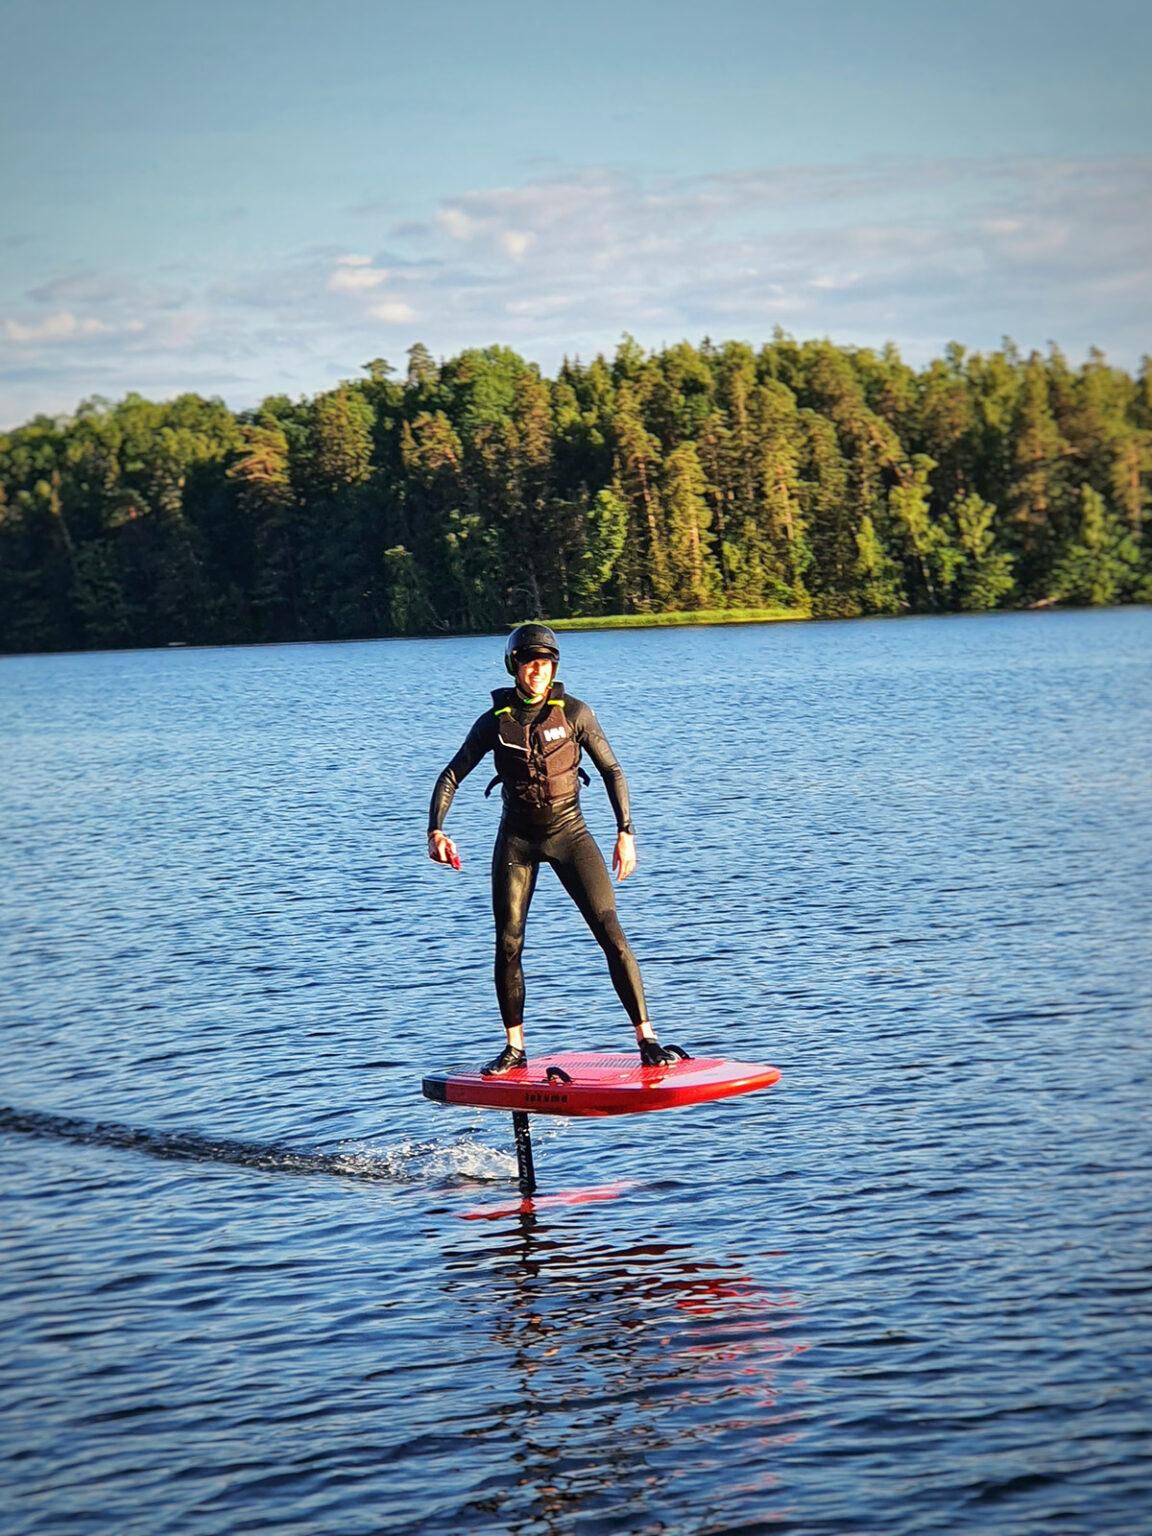 En man klädd i våtdräkt surfar på en bräda som är en halvmeter ovanför vattnet